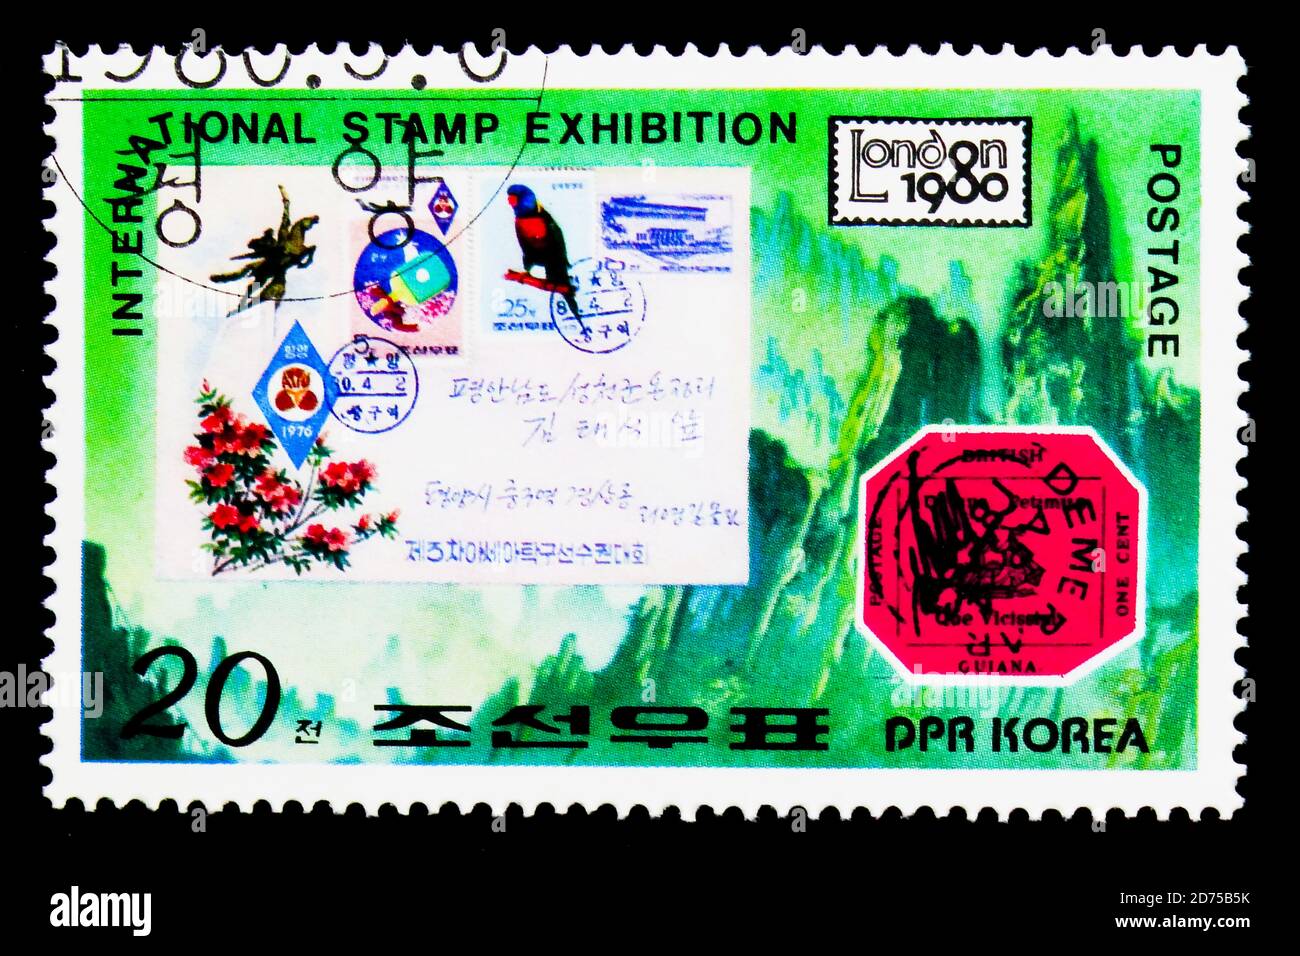 MOSCOU, RUSSIE - 25 NOVEMBRE 2017 : un timbre imprimé en république populaire démocratique de Corée montre la Guyane britannique un cent de couverture magenta et coréenne, I Banque D'Images